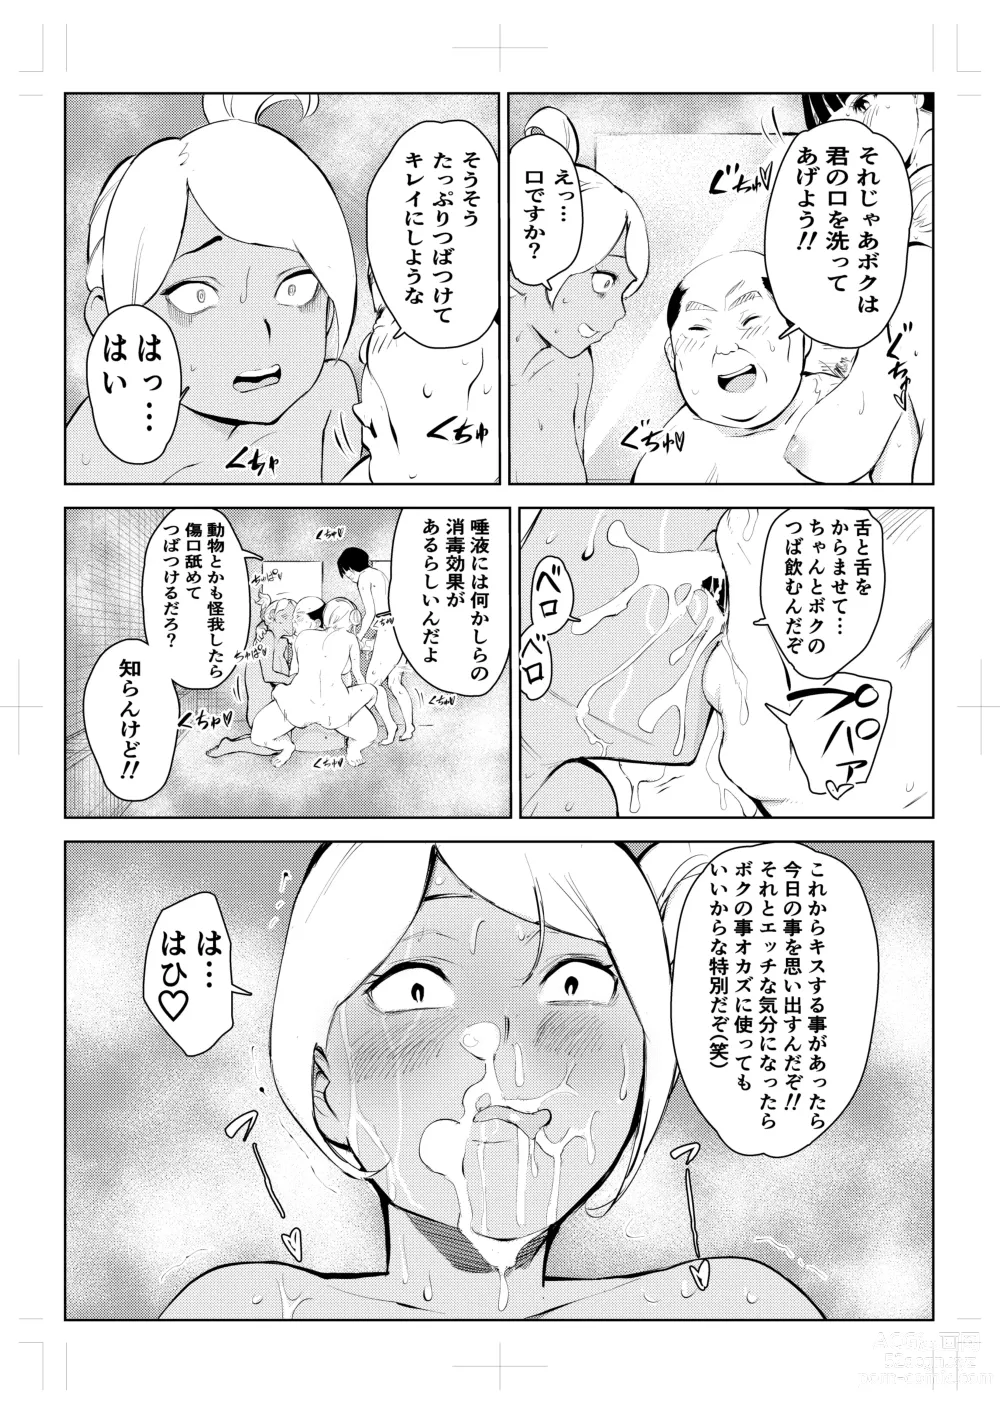 Page 71 of doujinshi 40-sai no Mahoutsukai 4